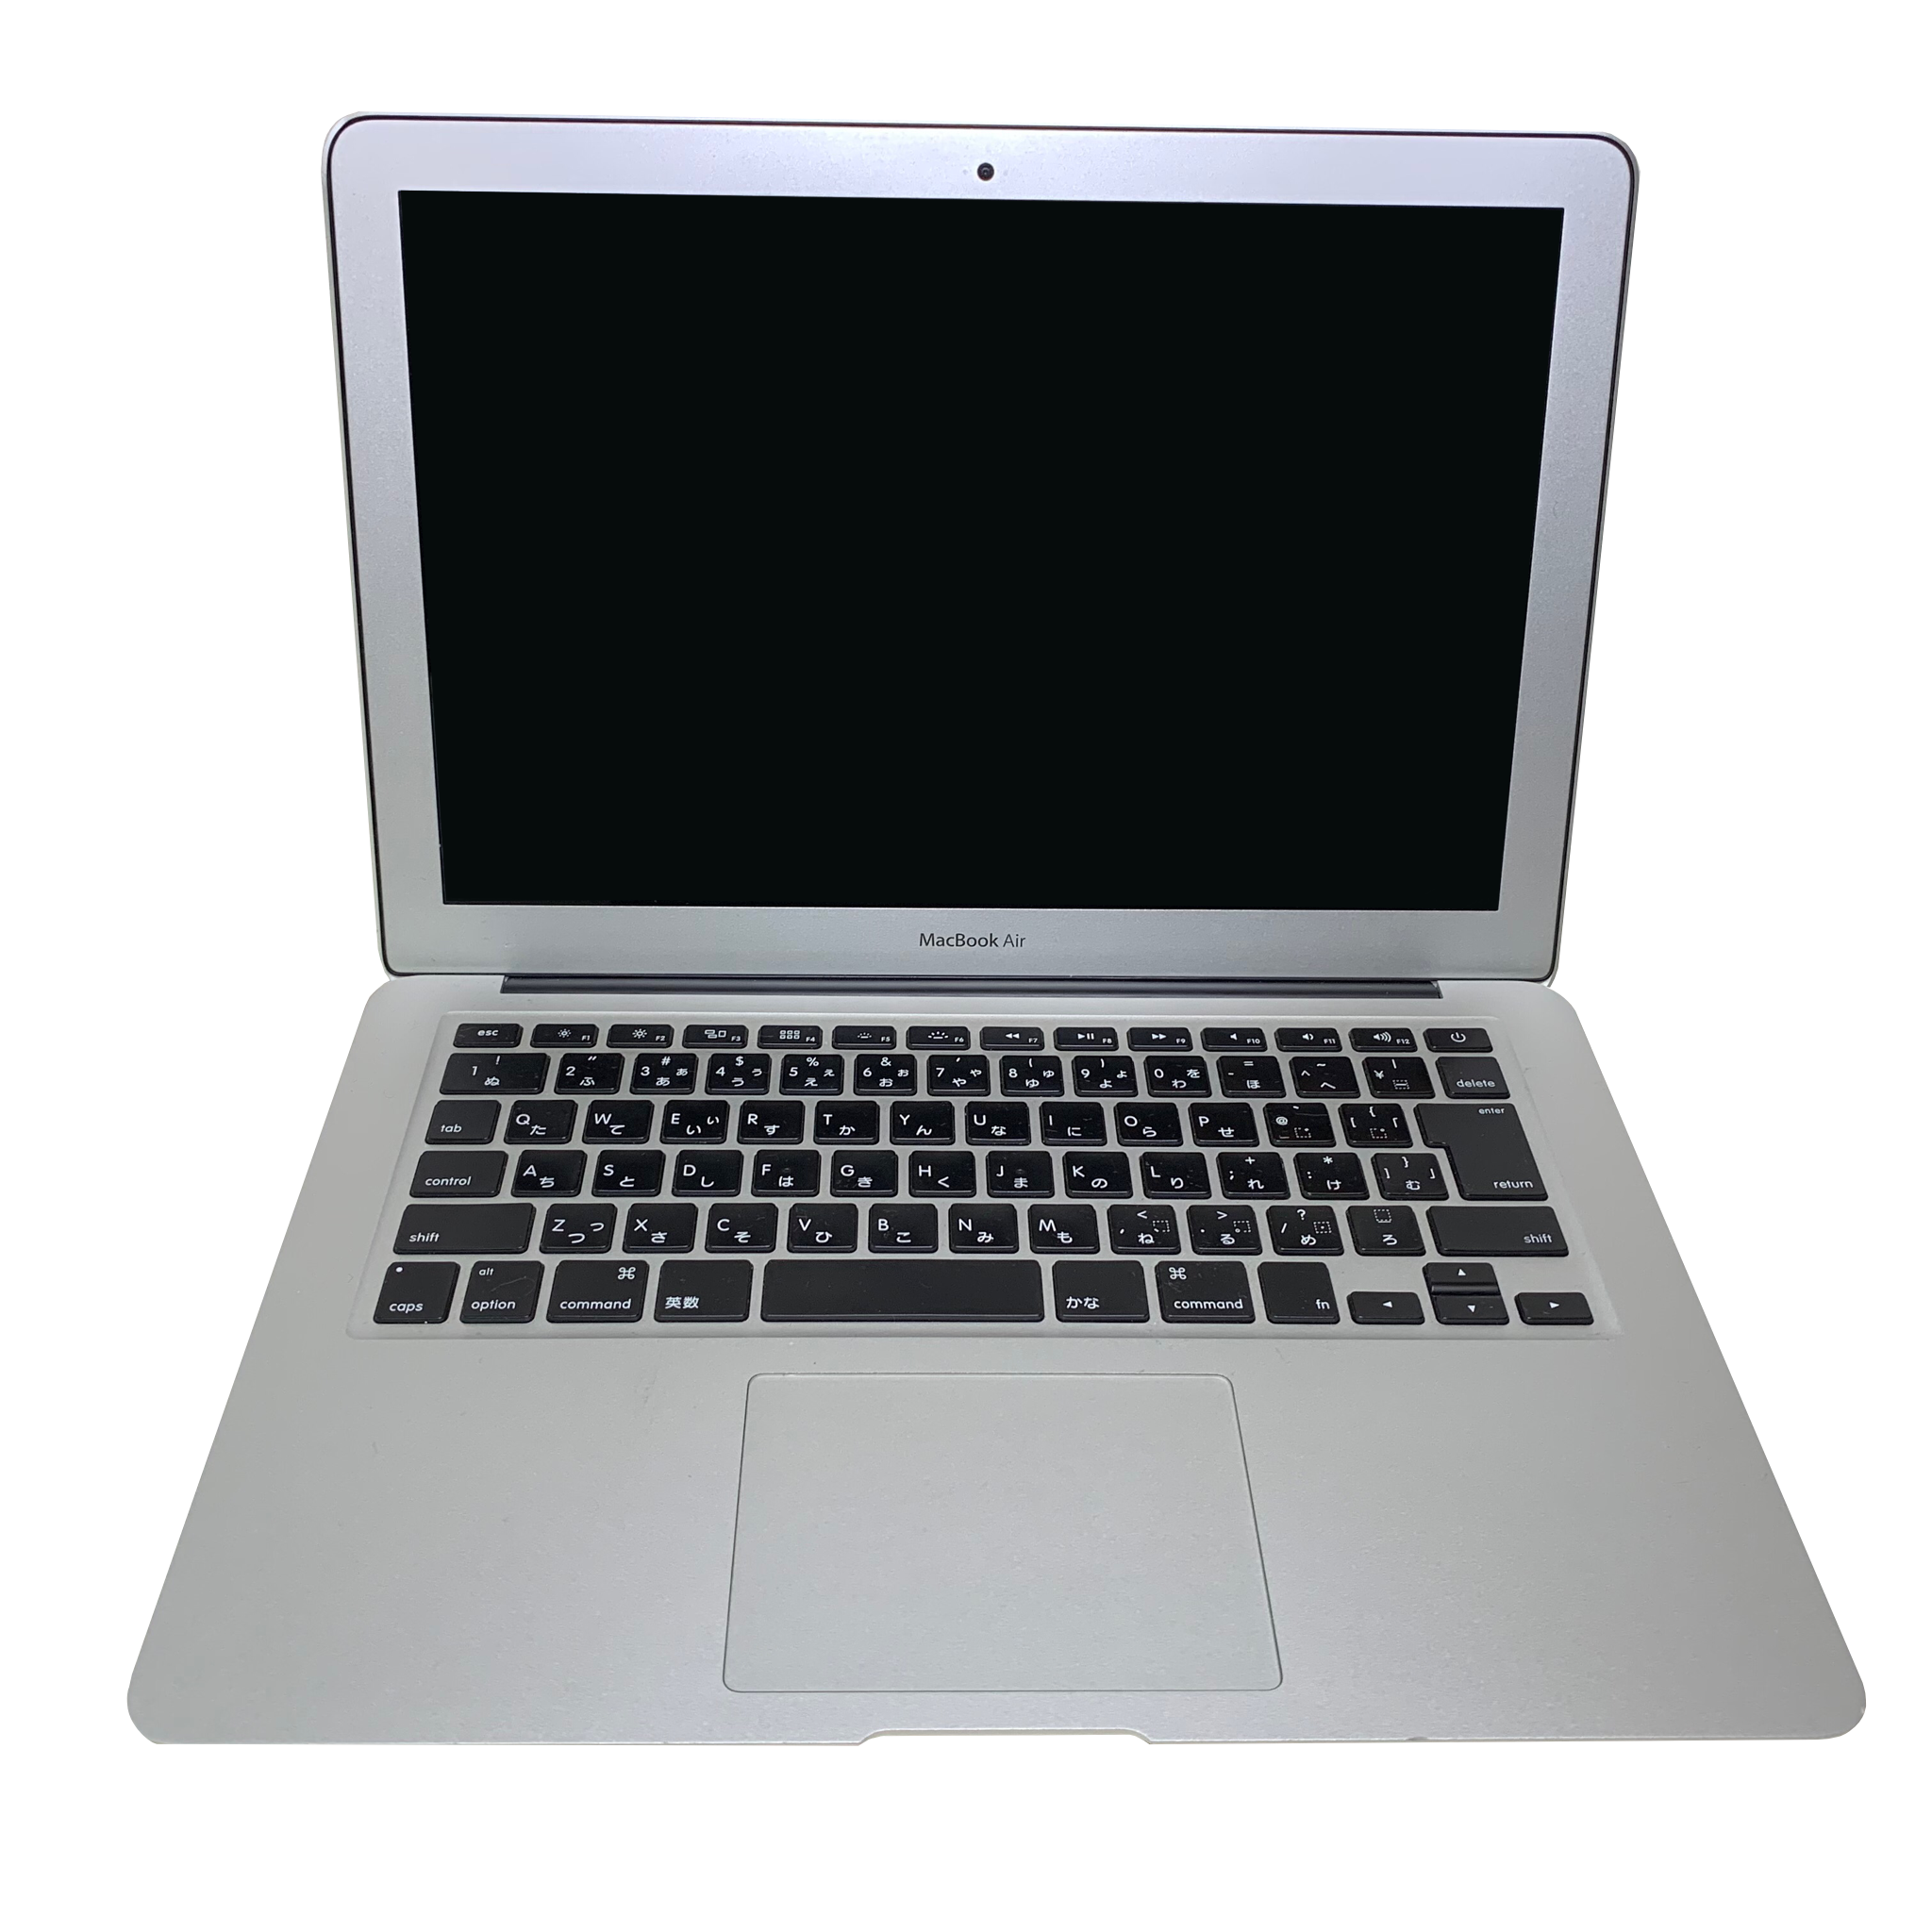 【即購入歓迎】Apple MacBook Air 256GB 初心者さんもOK